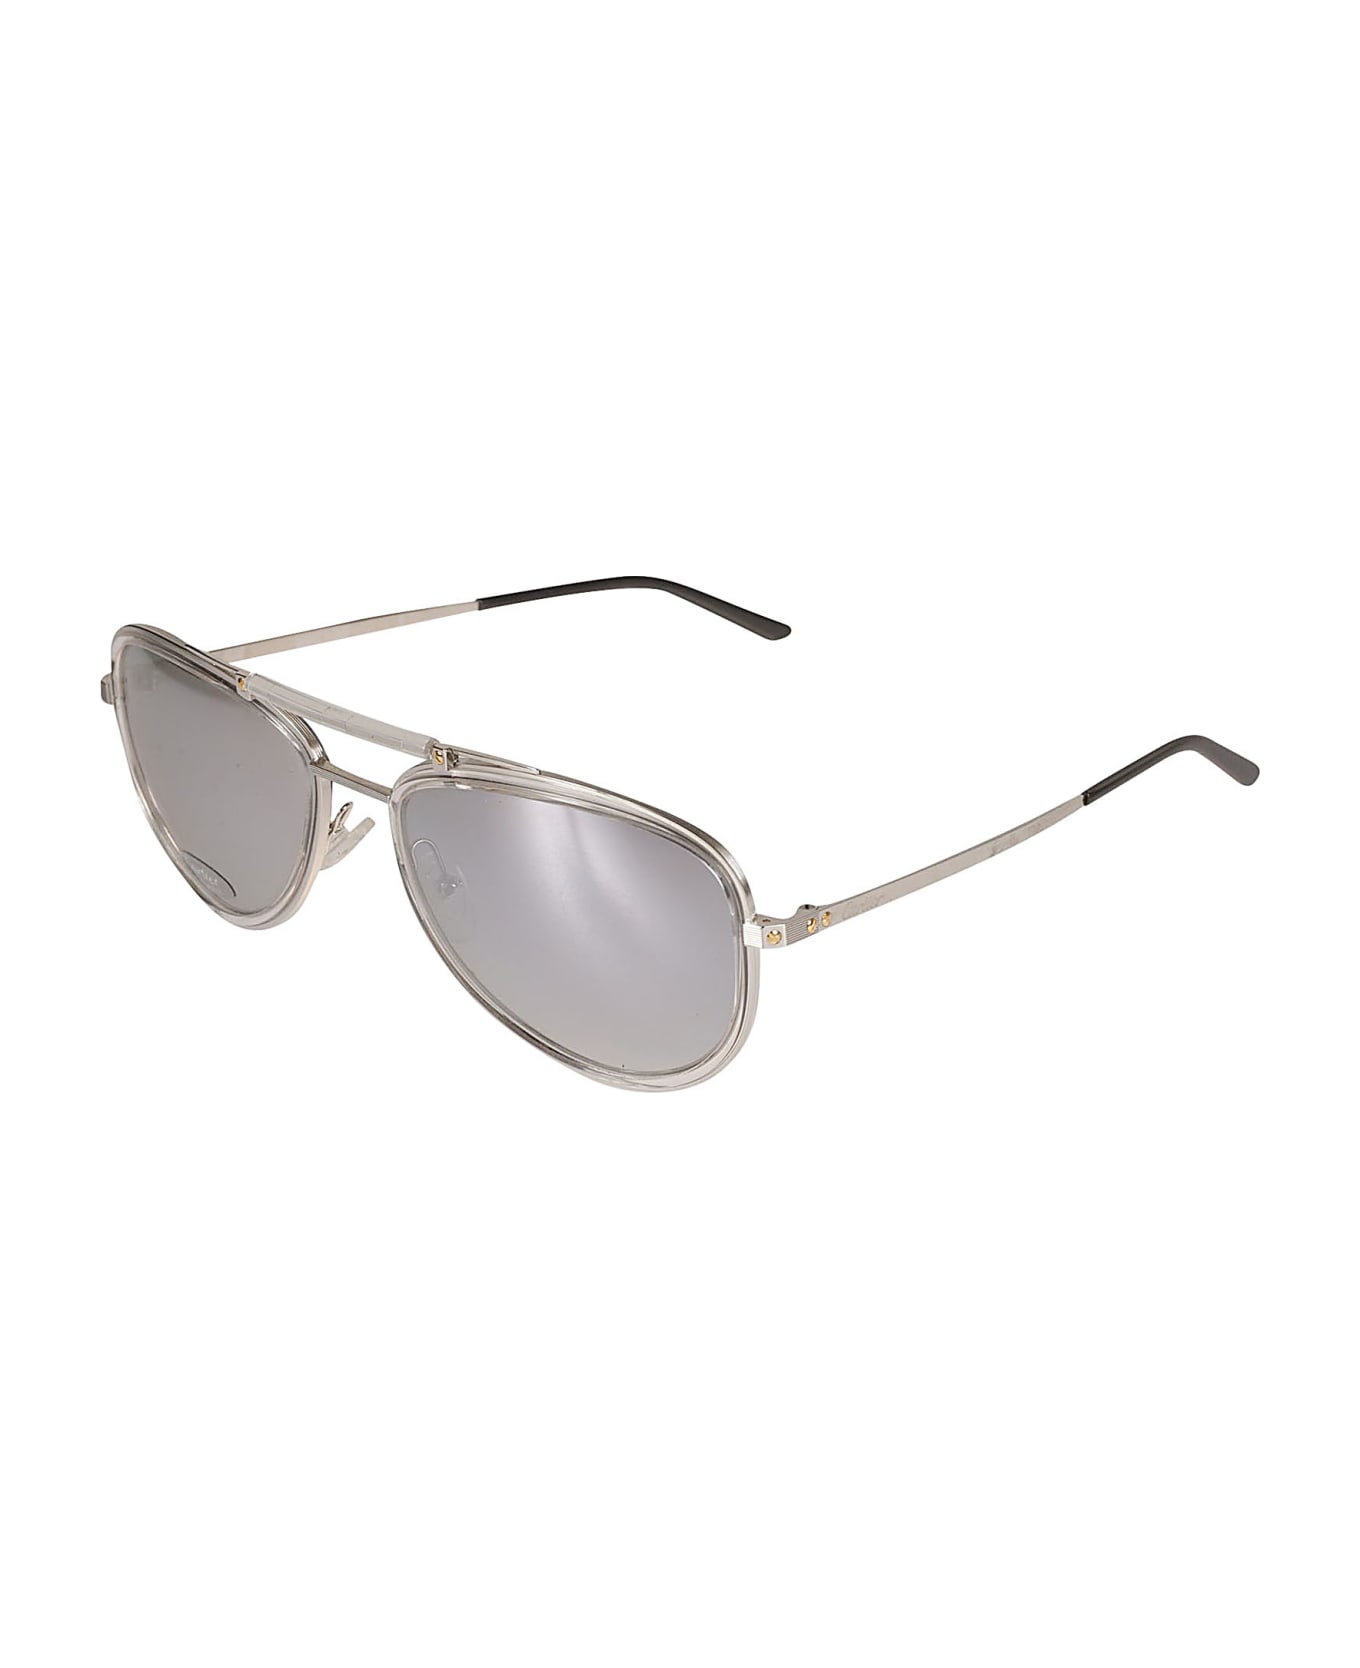 Cartier Eyewear Thick Aviator Sunglasses - platinum サングラス